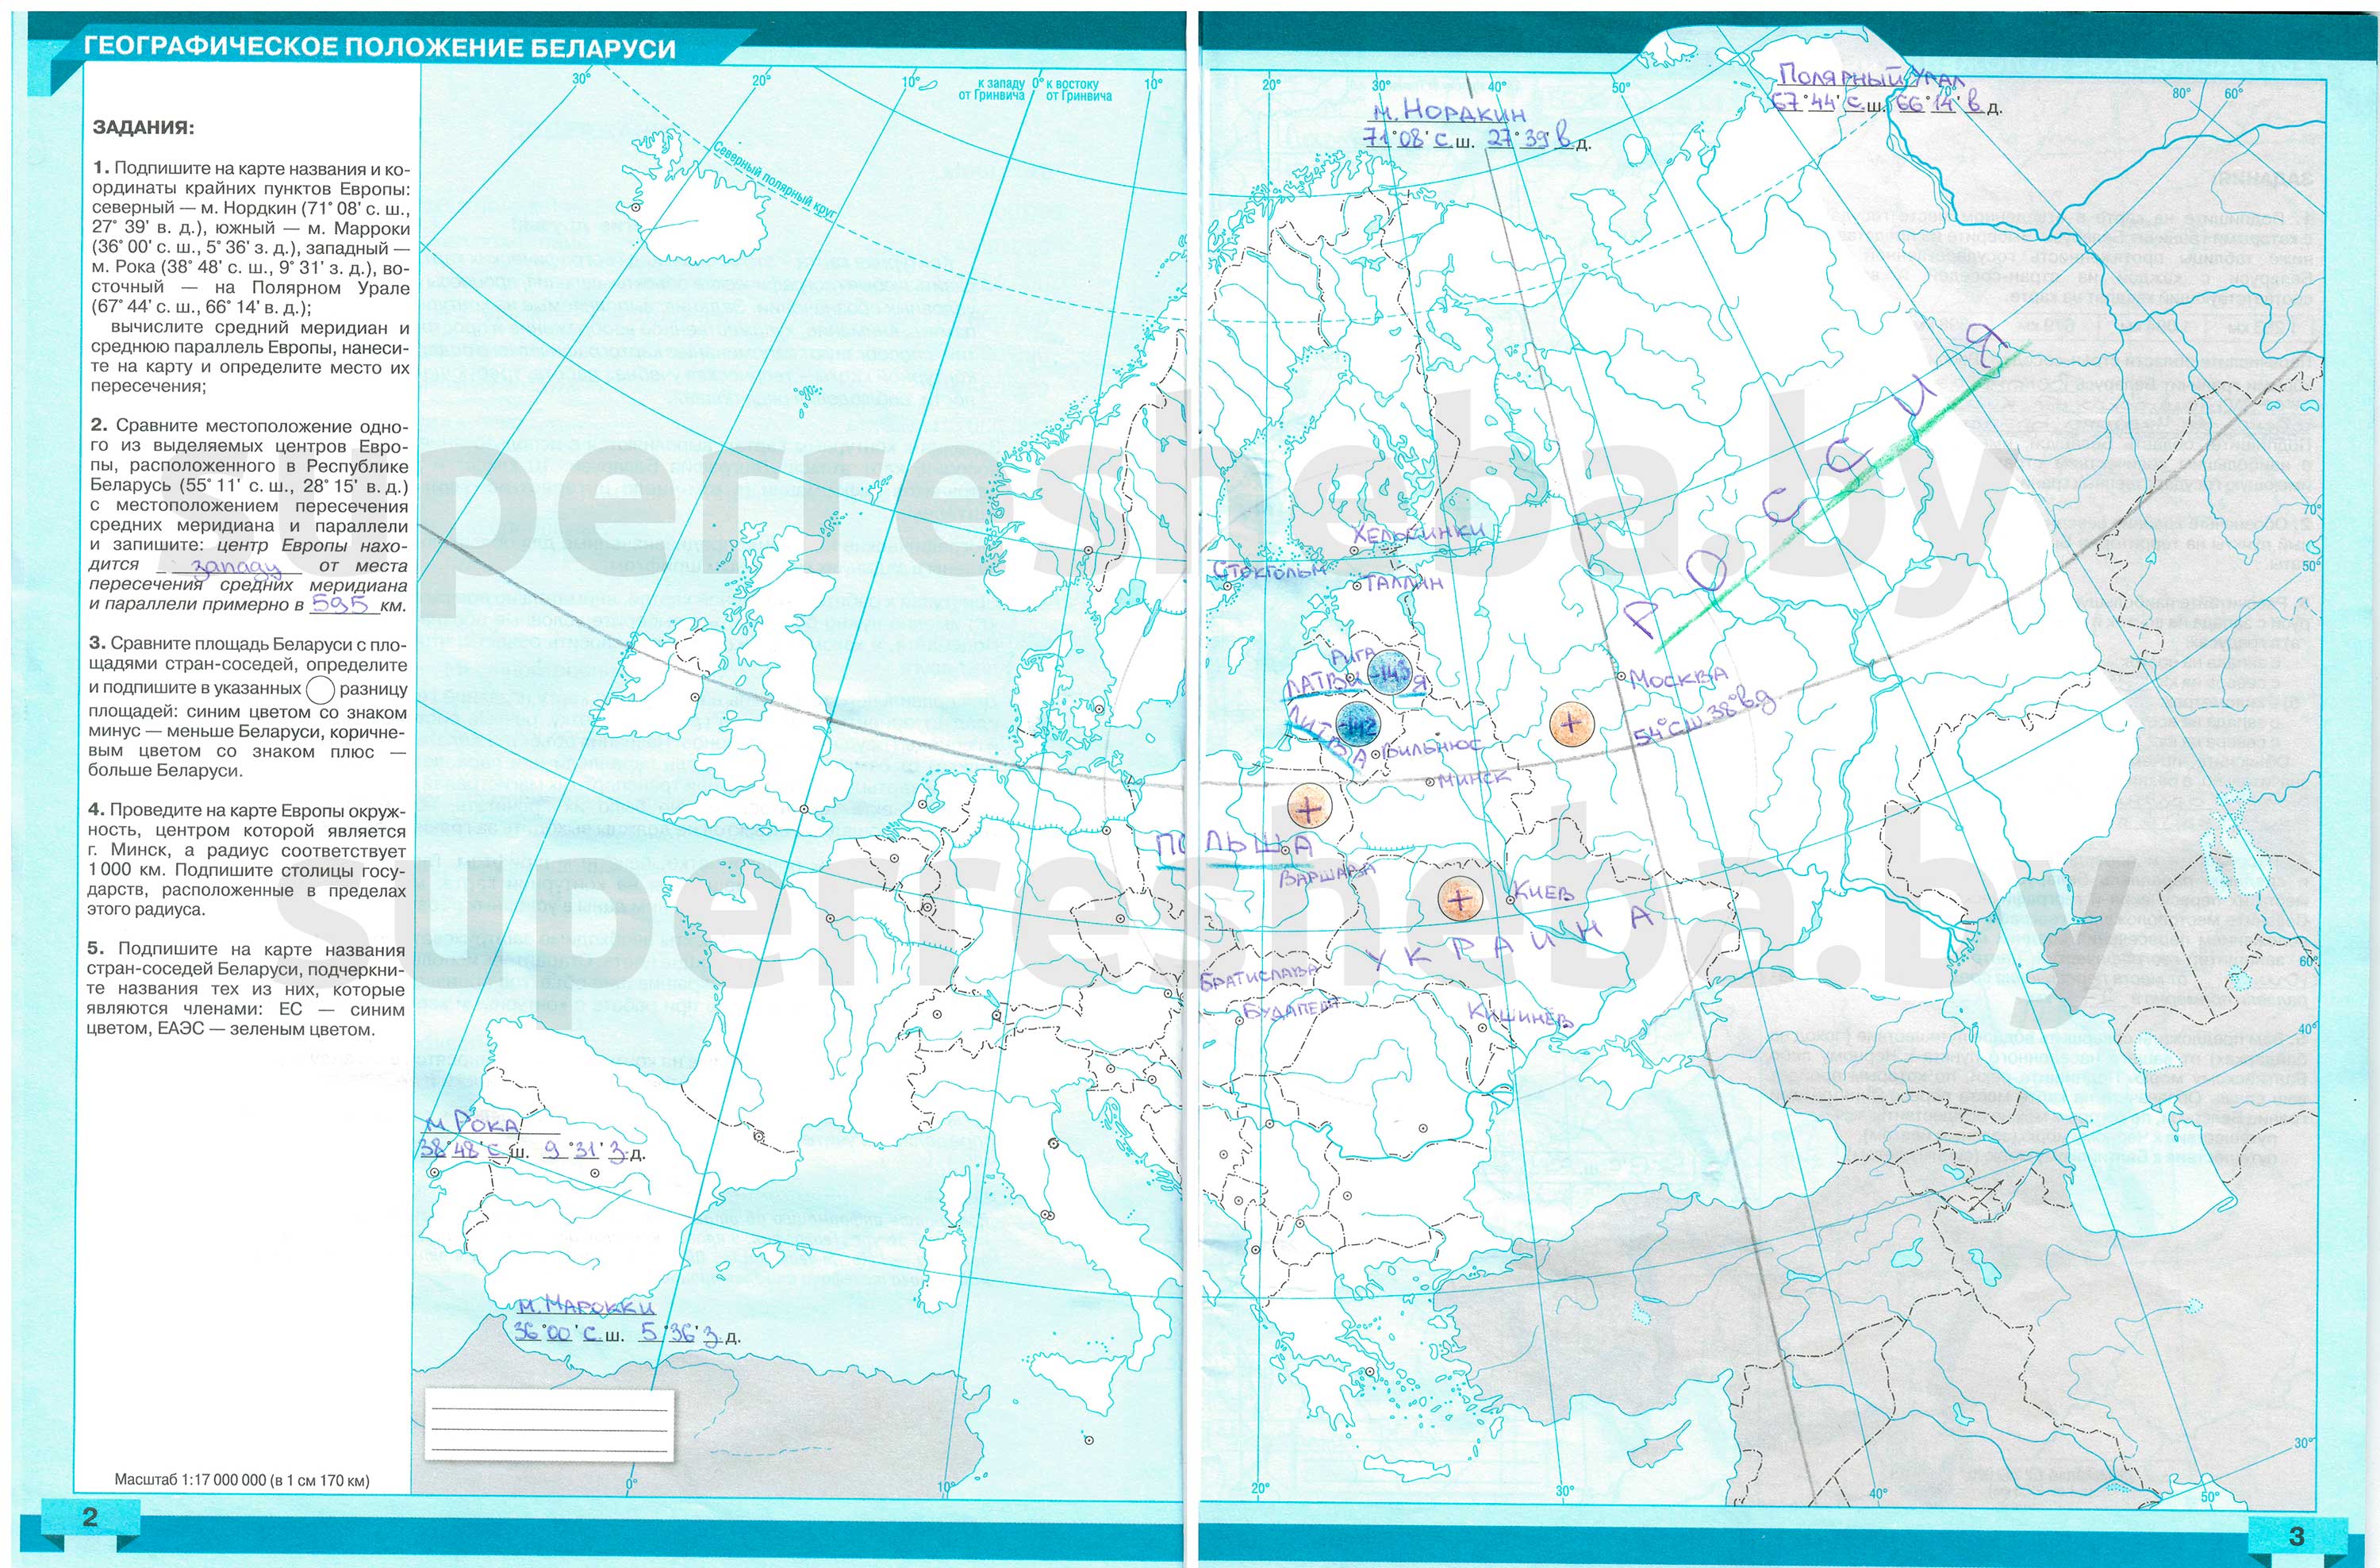 ГДЗ: География 9 класс Брилевский, Климович - Контурная карта